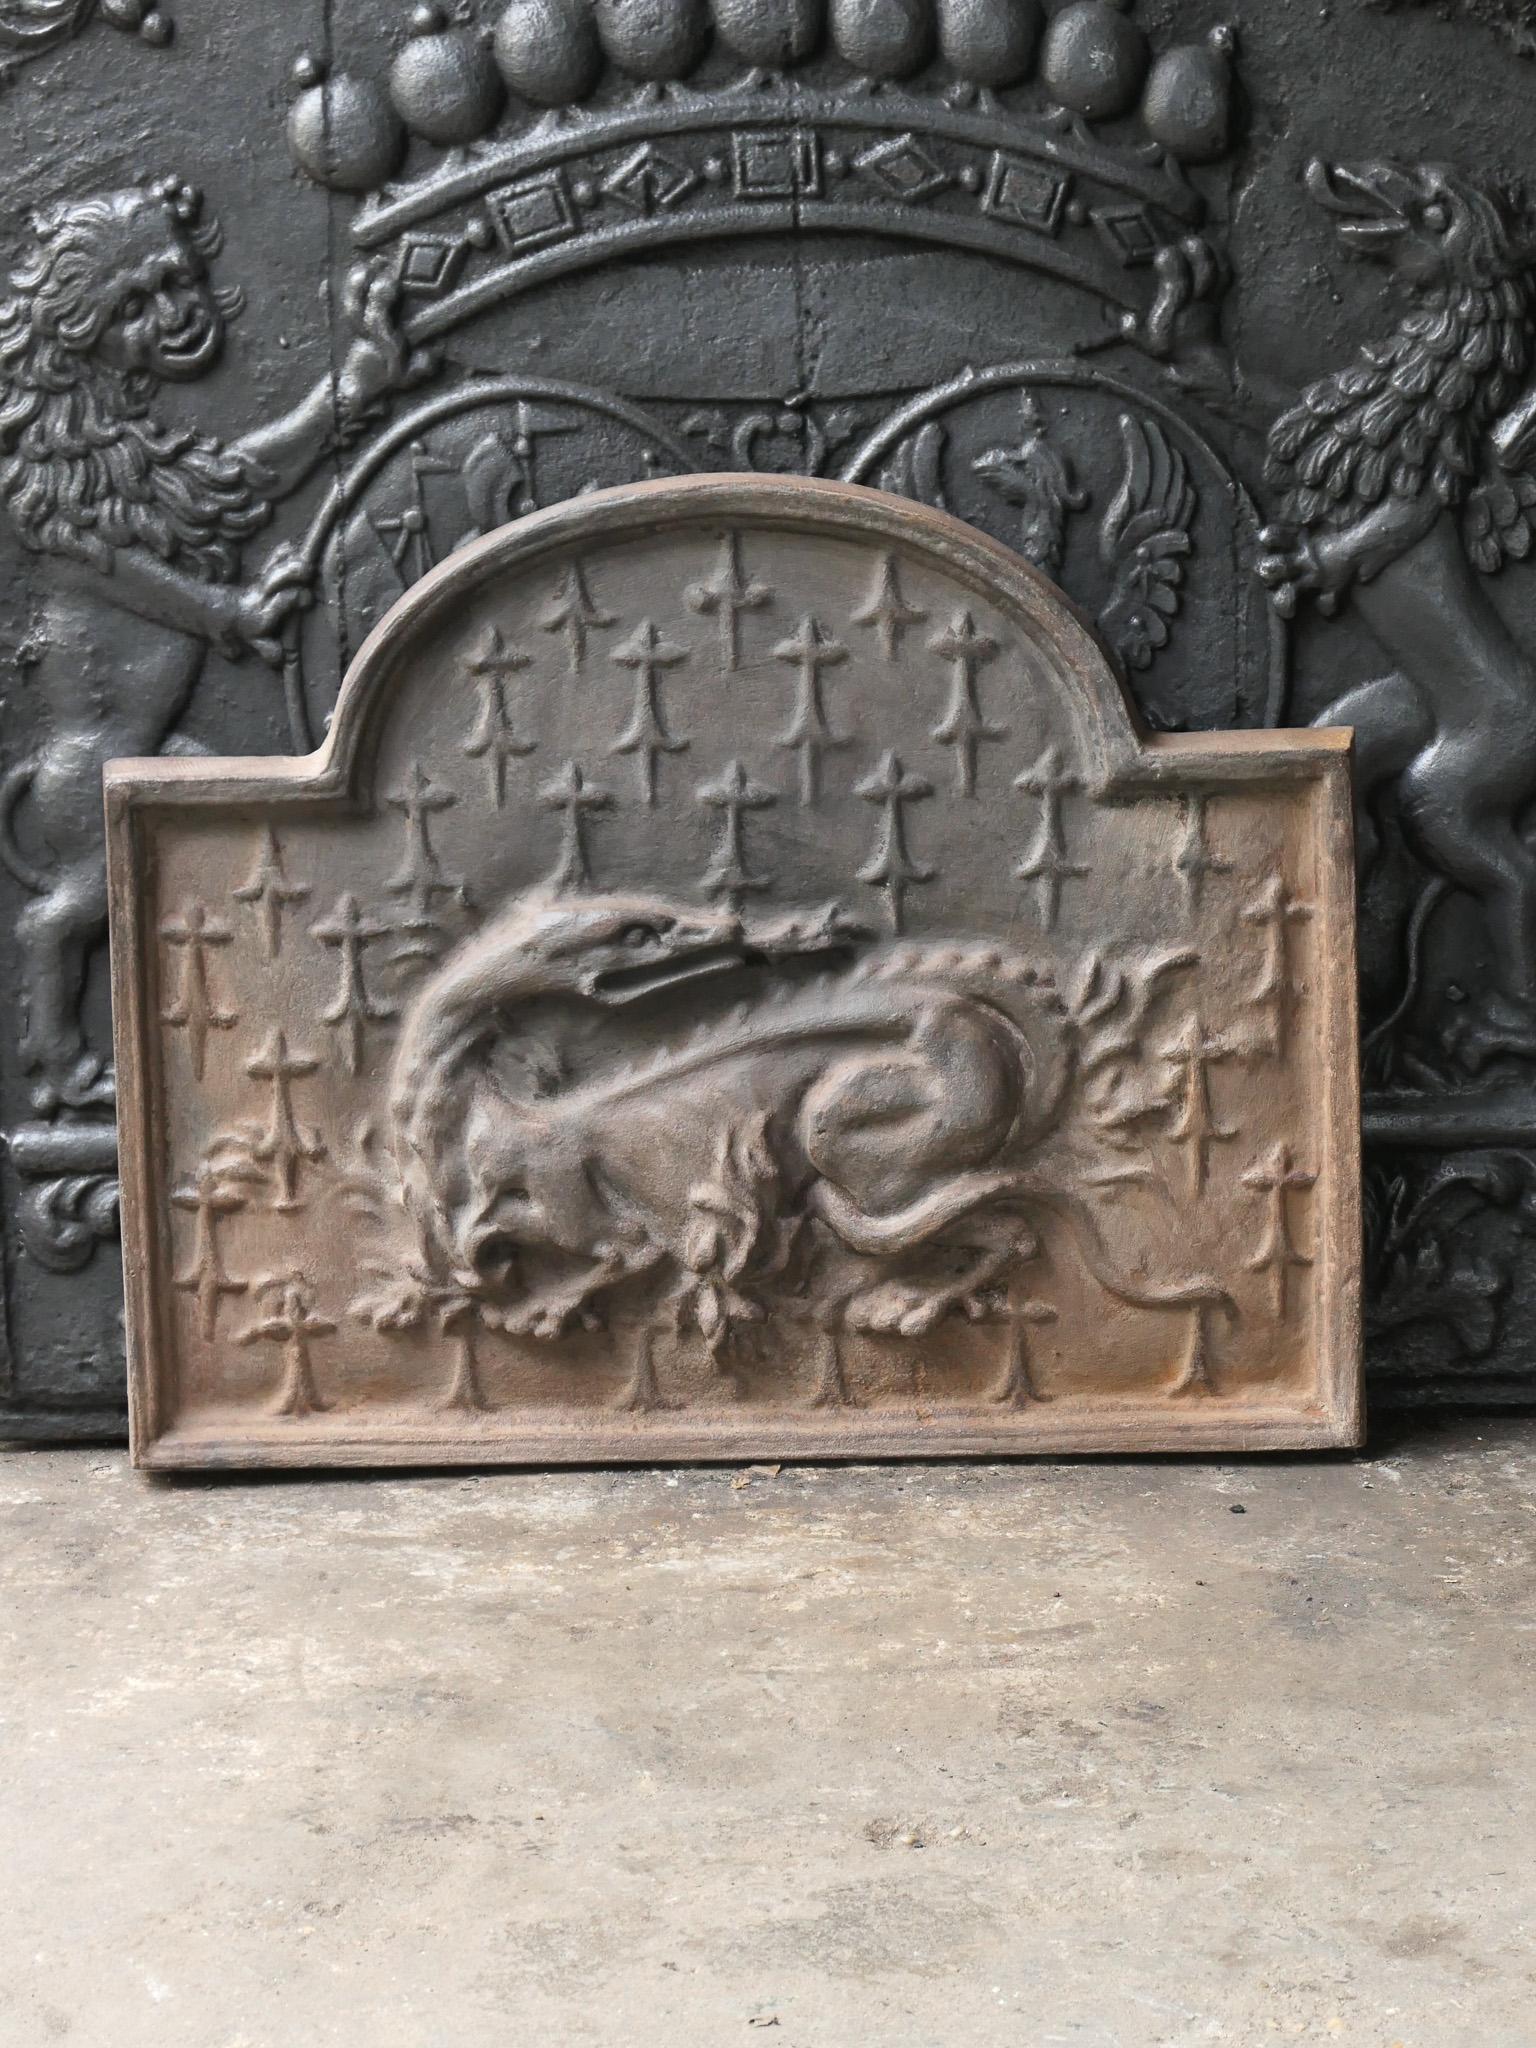 Plaque de cheminée du 20e siècle de style Renaissance française avec la salamandre. La salamandre est le symbole du roi François I+I, qui fut roi de France de 1515 à 1547.

La plaque de cheminée est en fonte et a une patine brune naturelle. Sur